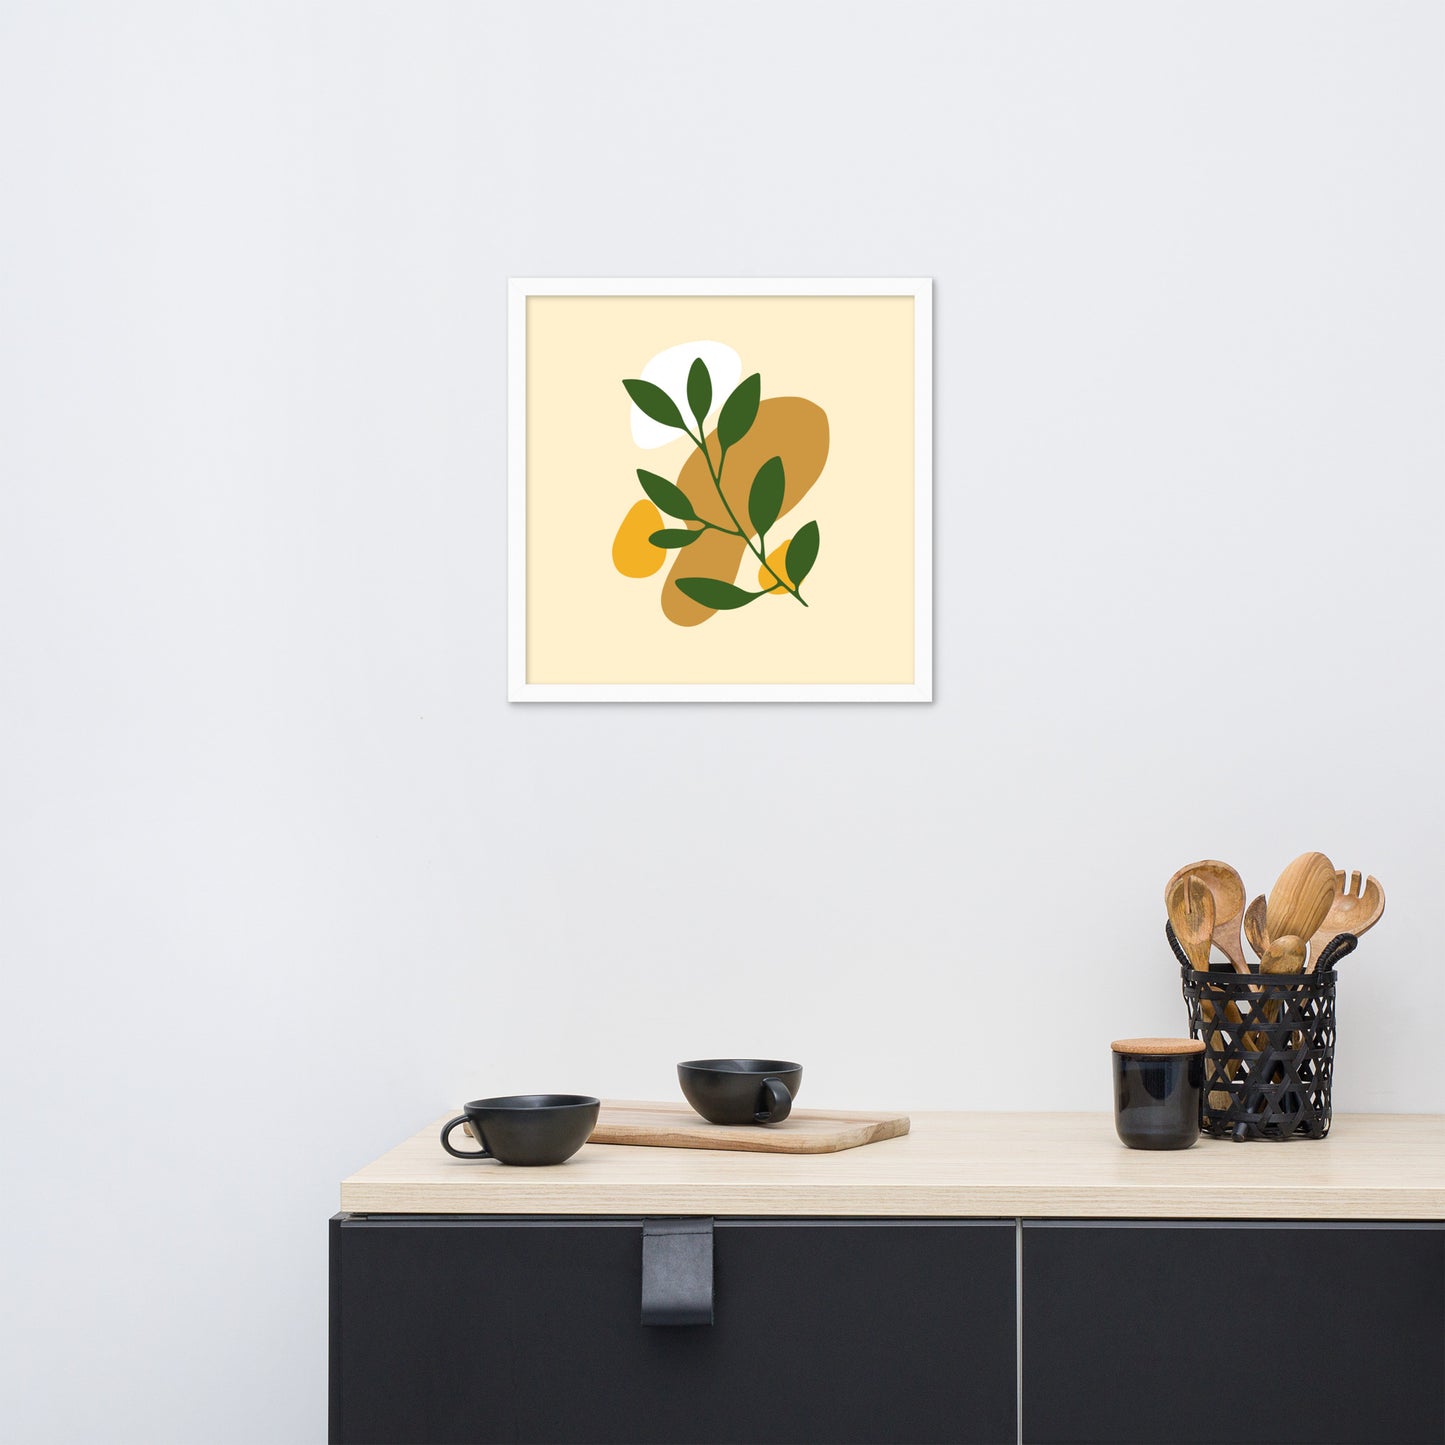 Radiant Blossoms: Minimal Flower Framed Photo Paper Poster for Elegant Home Decor